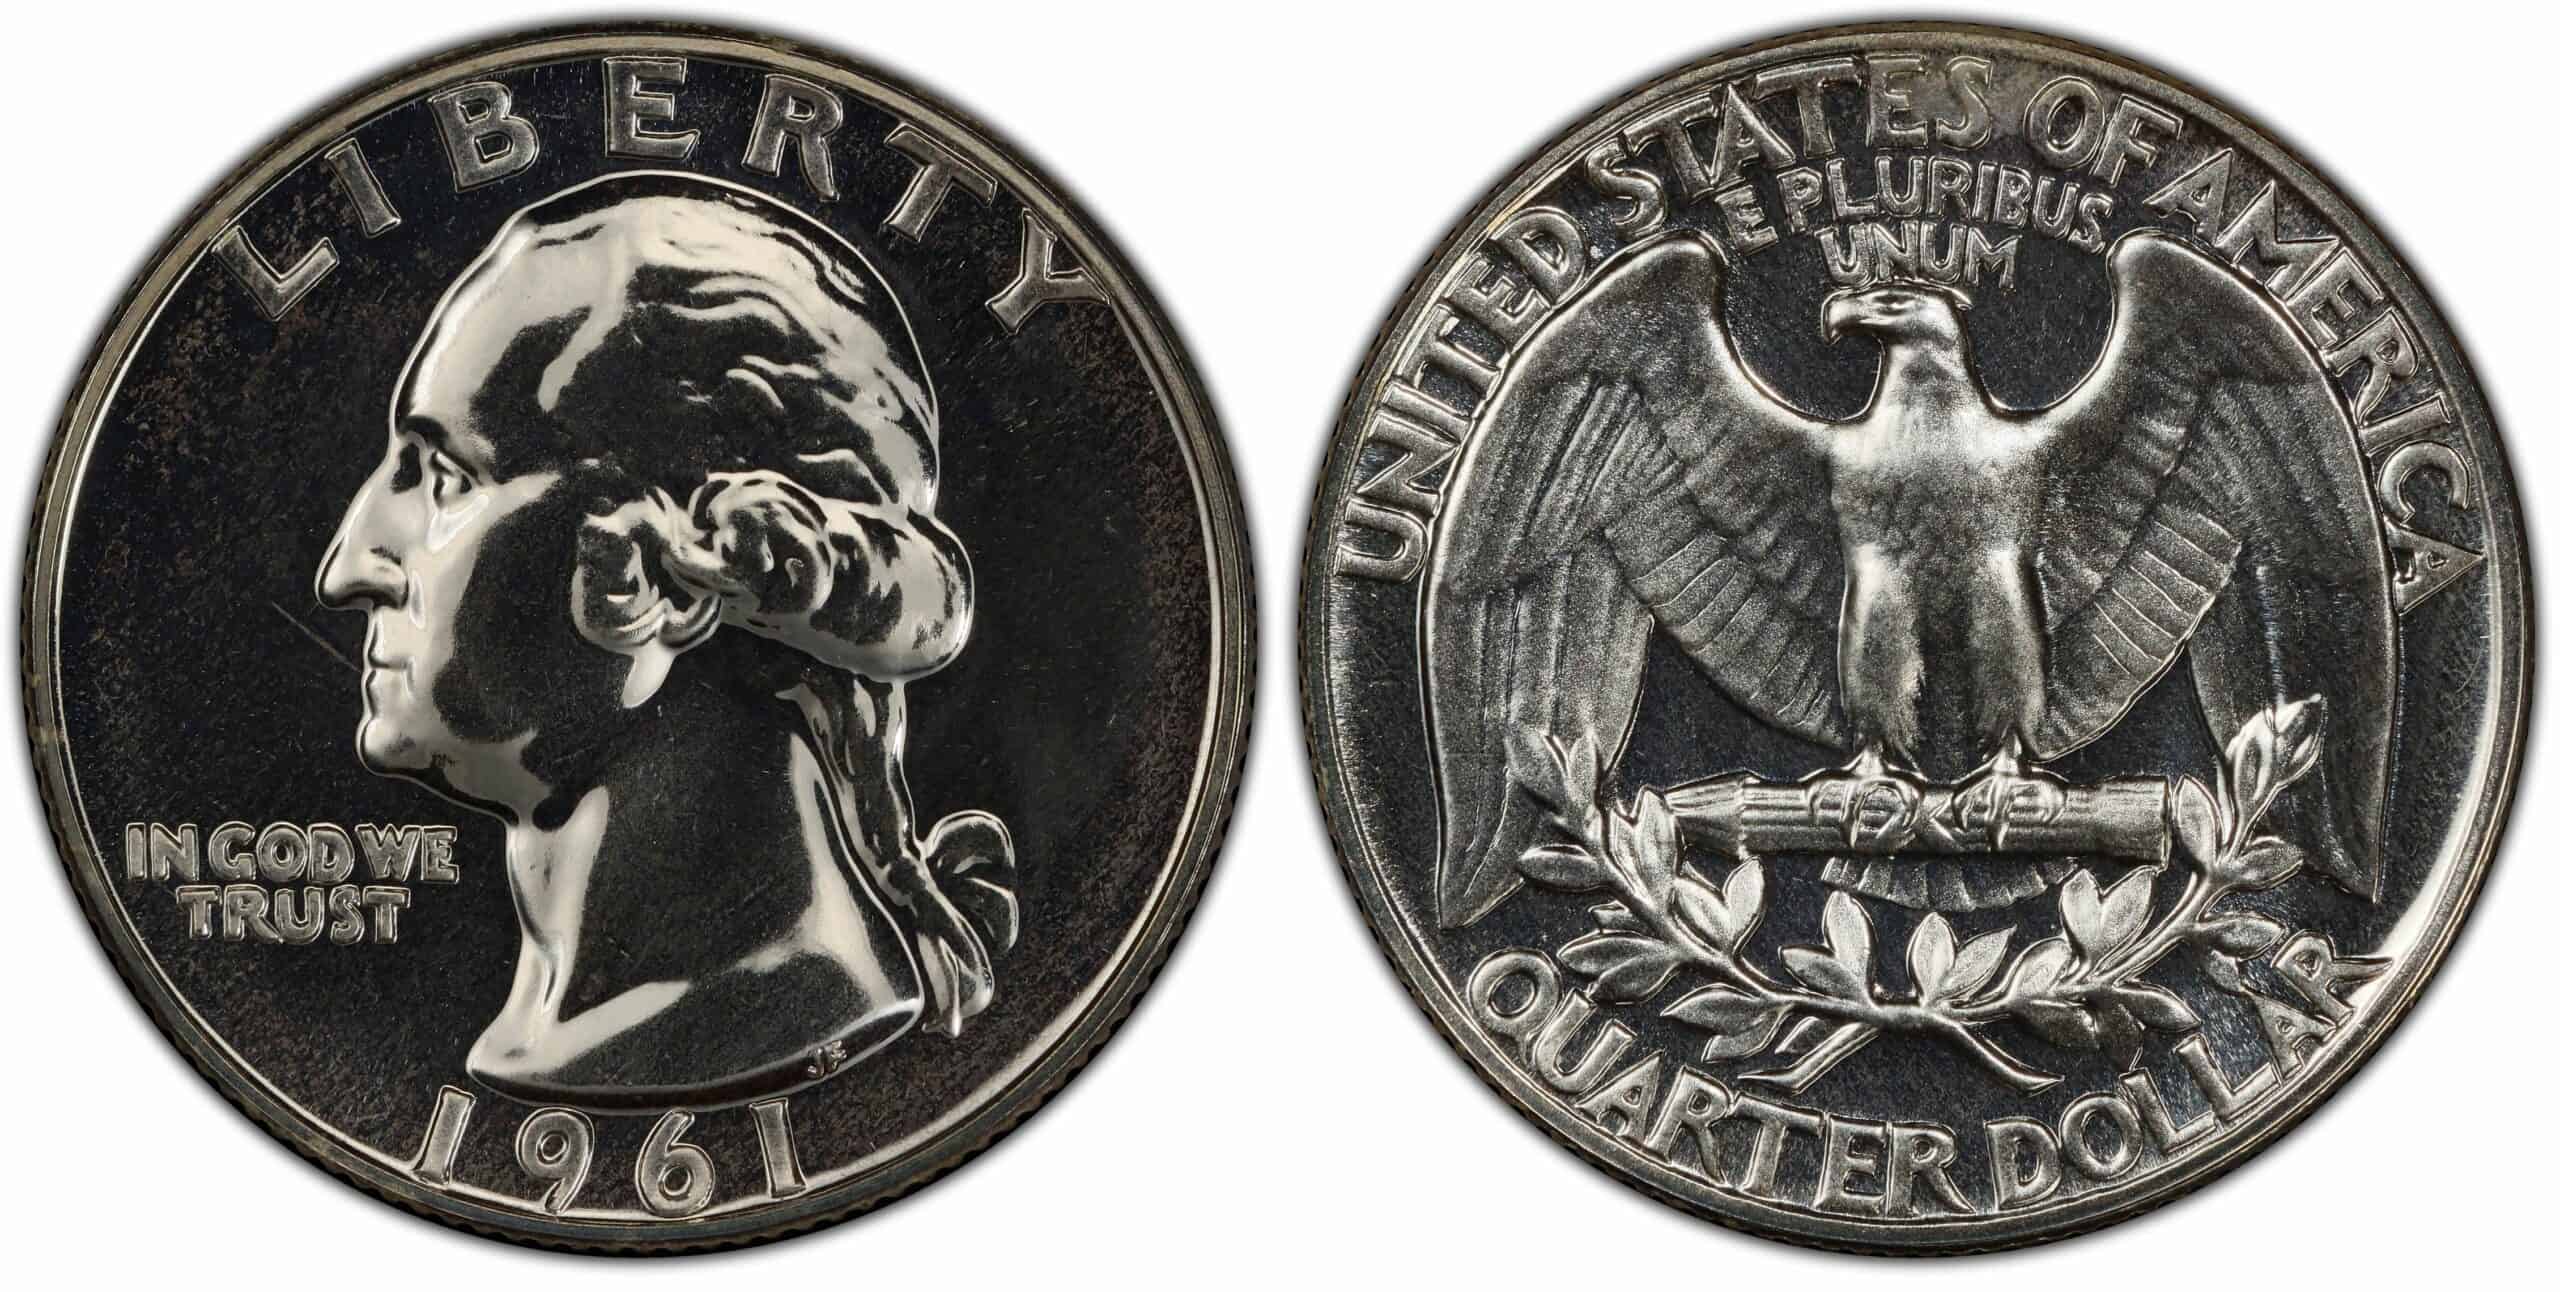 1961 (P) Proof Quarter Value